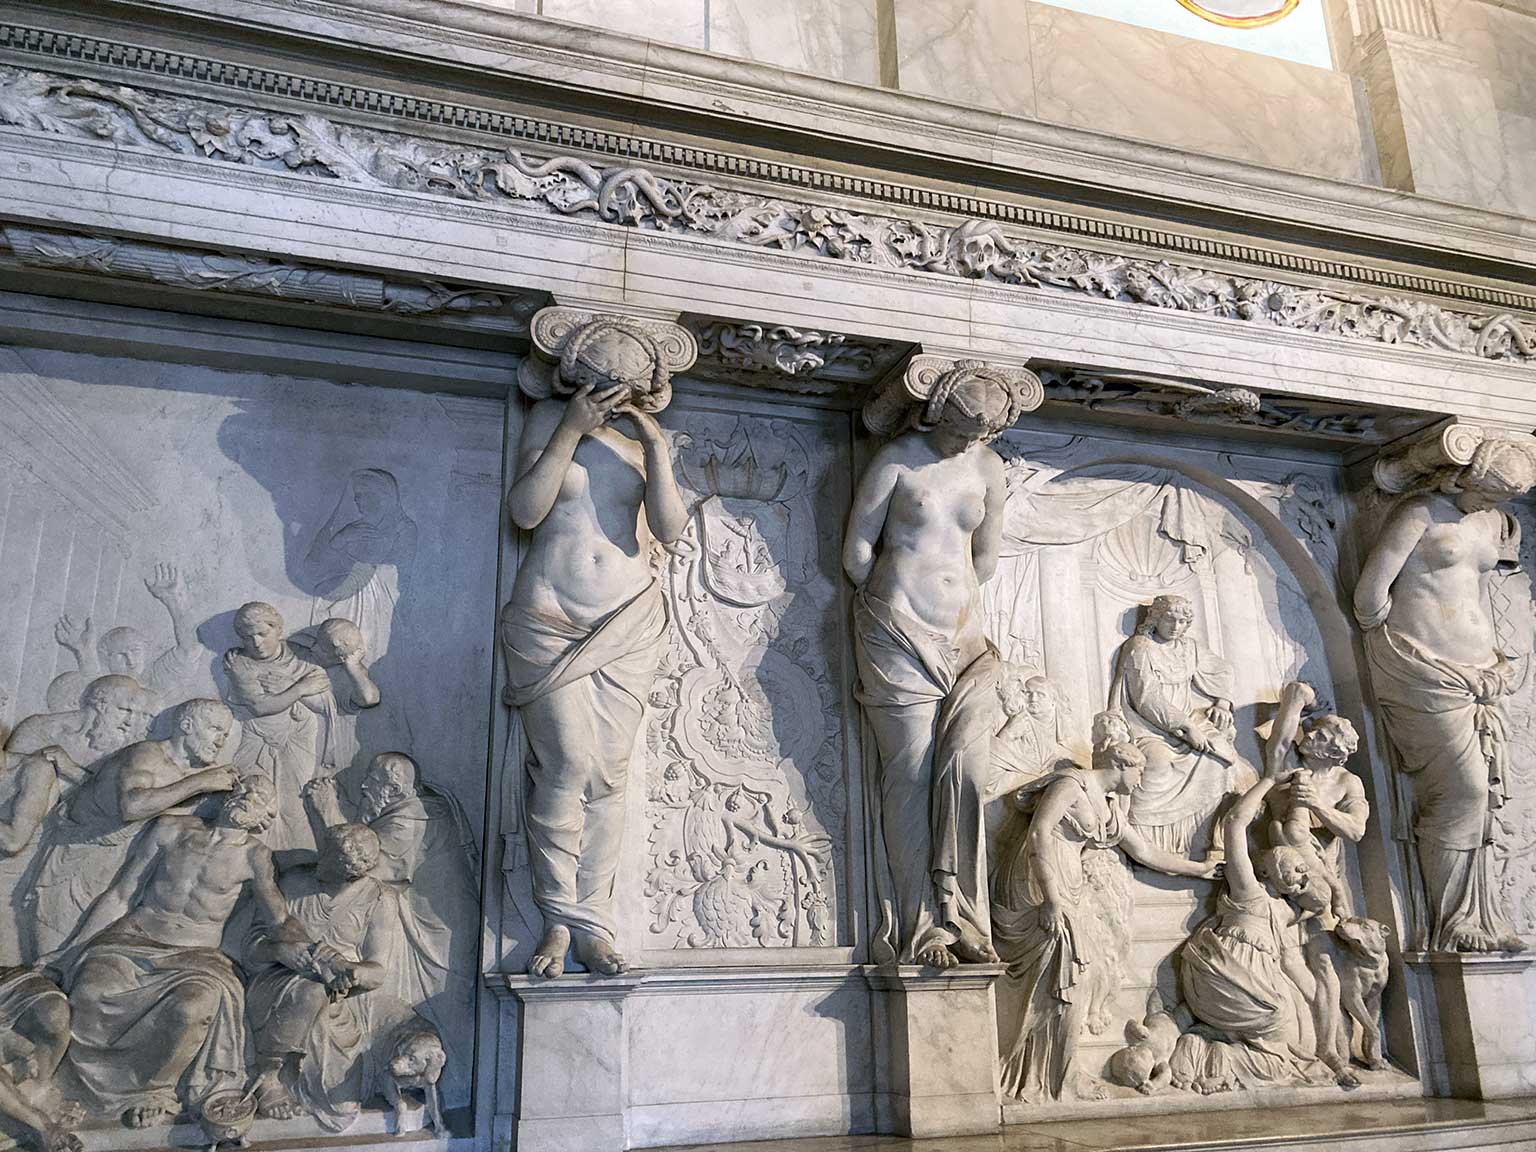 Vrouwenfiguren en reliëfs door Artus Quellinus, Vierschaar, paleis op de Dam, Amsterdam